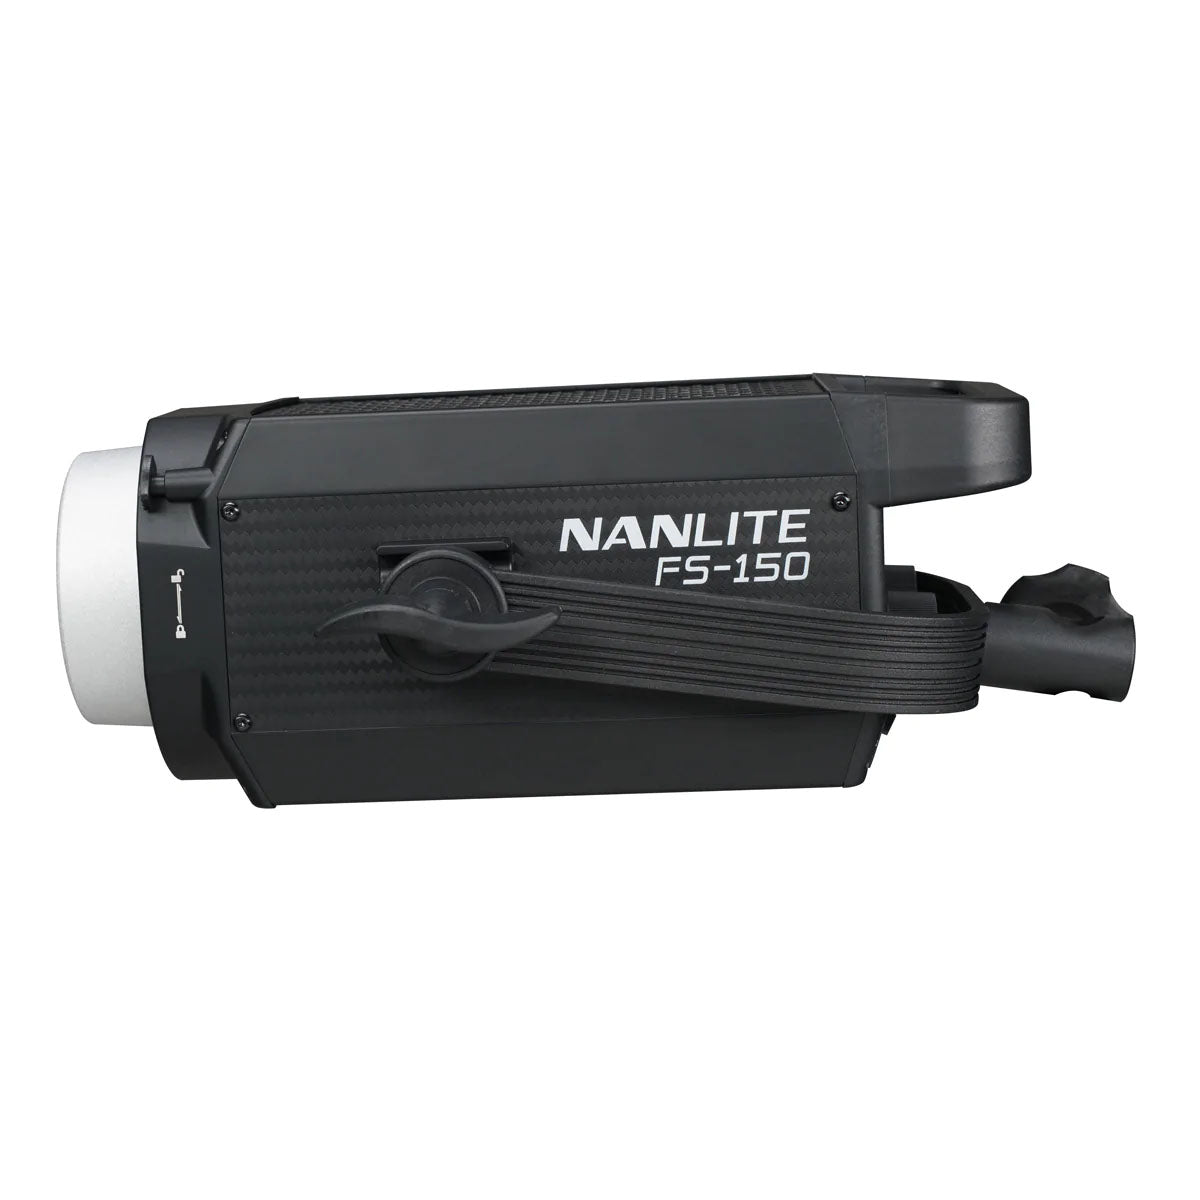 NANLITE(ナンライト) LEDライト FS-150 (12-8104)